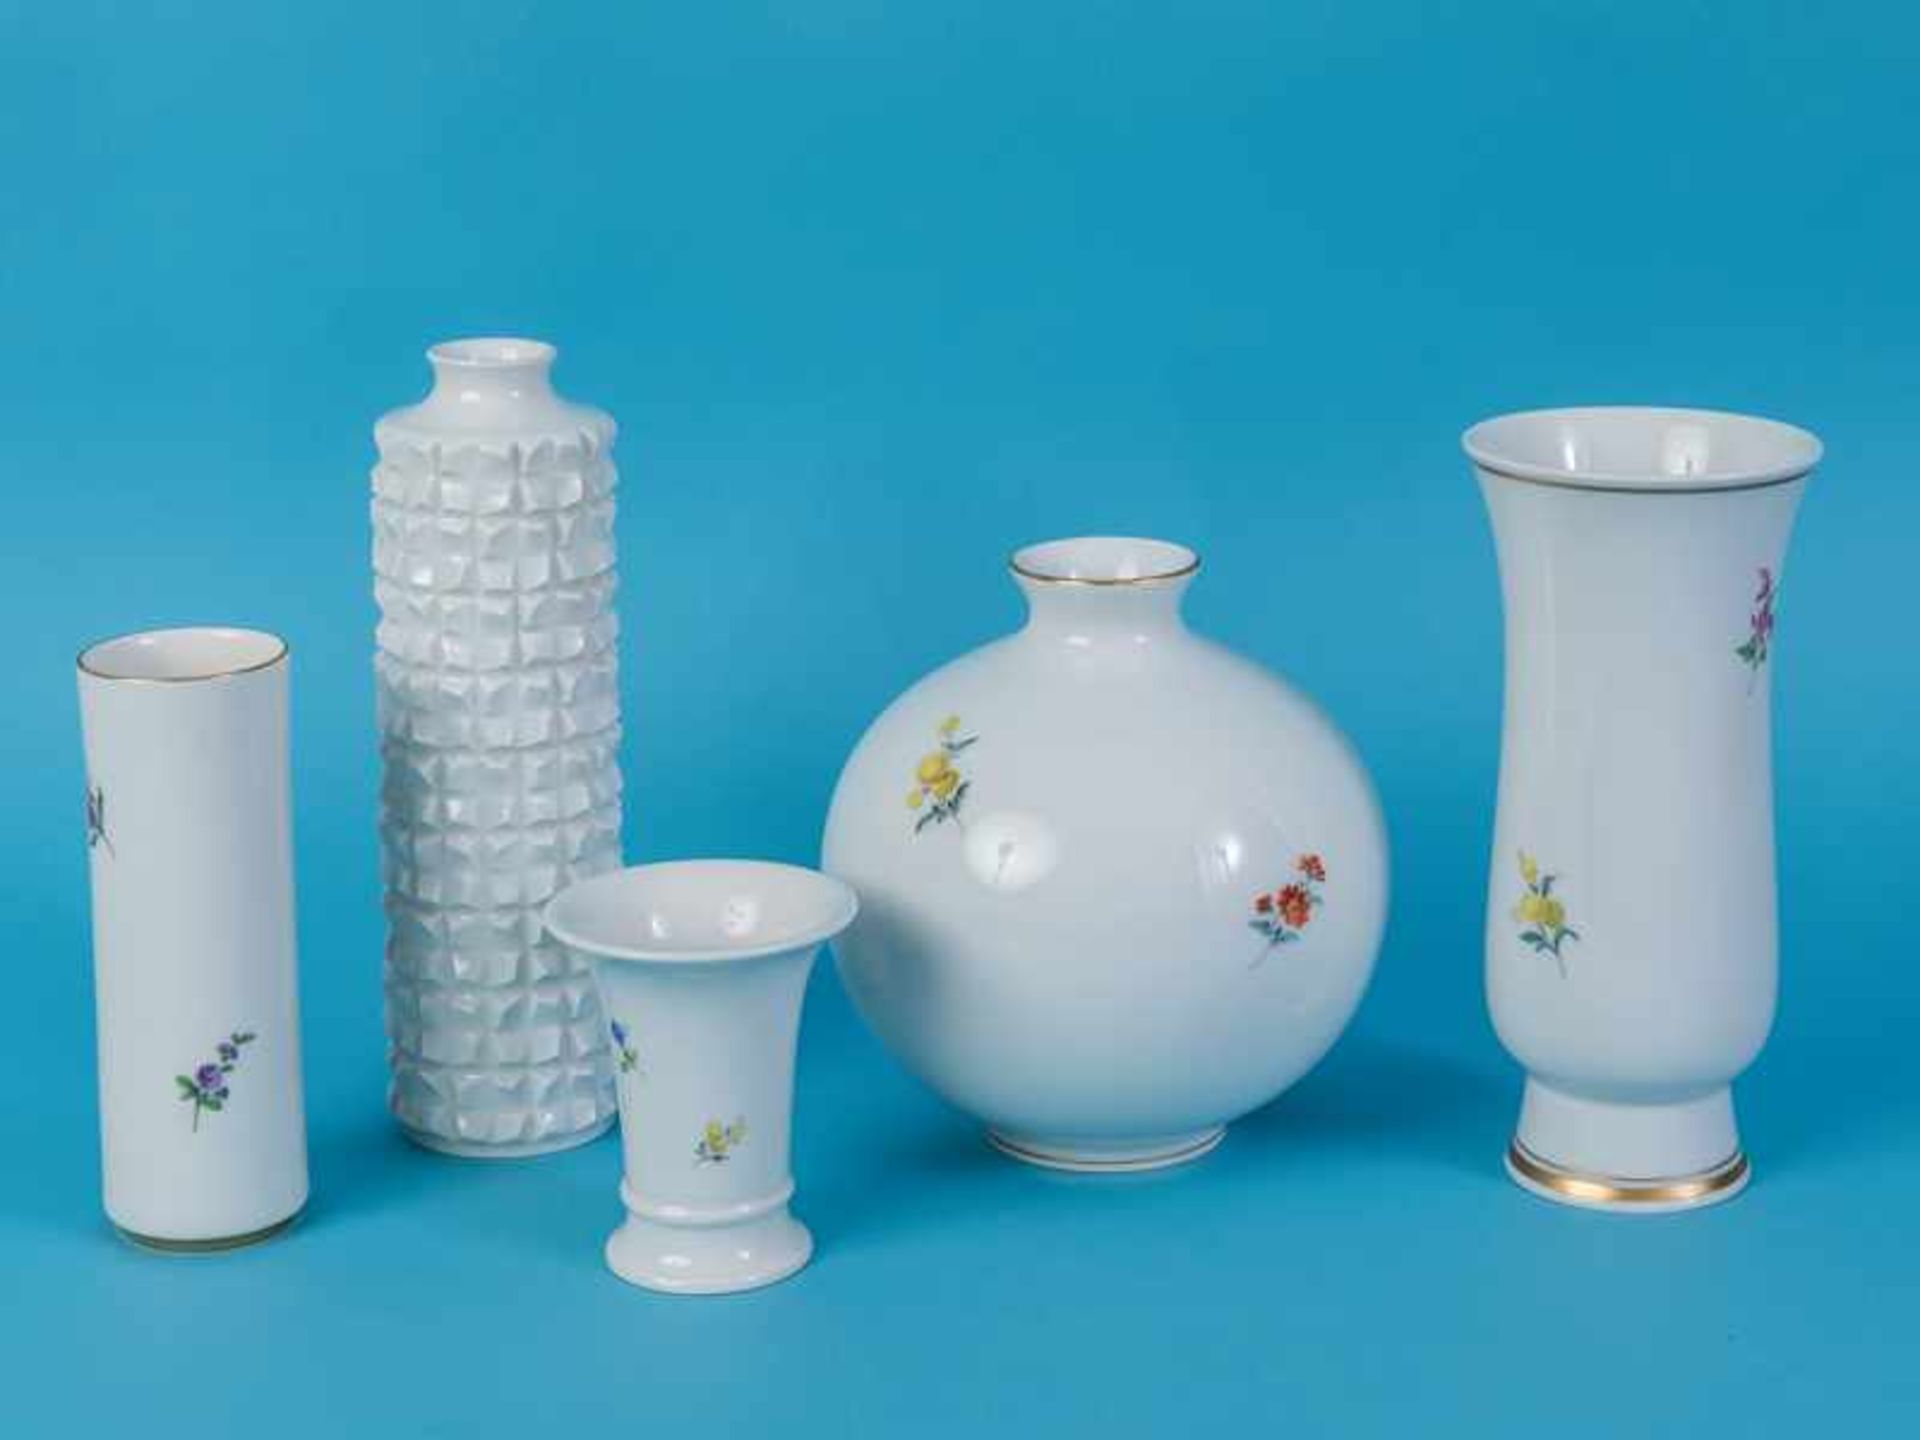 5 verschiedene Vasen, 4x "Deutsche Blume" + 1x Weiß/Design Ludwig Zepner; Meissen, 20. Jh. - Bild 2 aus 3